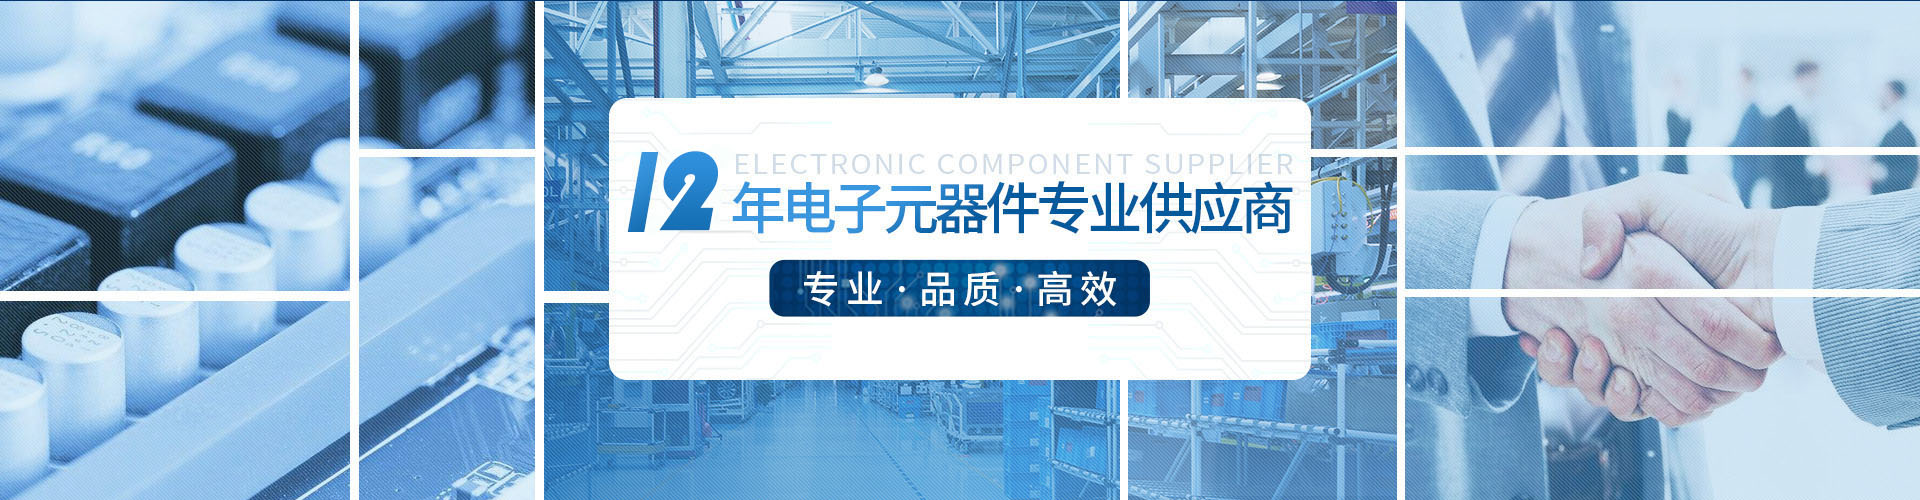 2,深圳市尼西科技有限公司 陶瓷电容器|压敏电阻器|NTC热敏电阻器|独石电容器|片式安规电容|片式压敏电阻